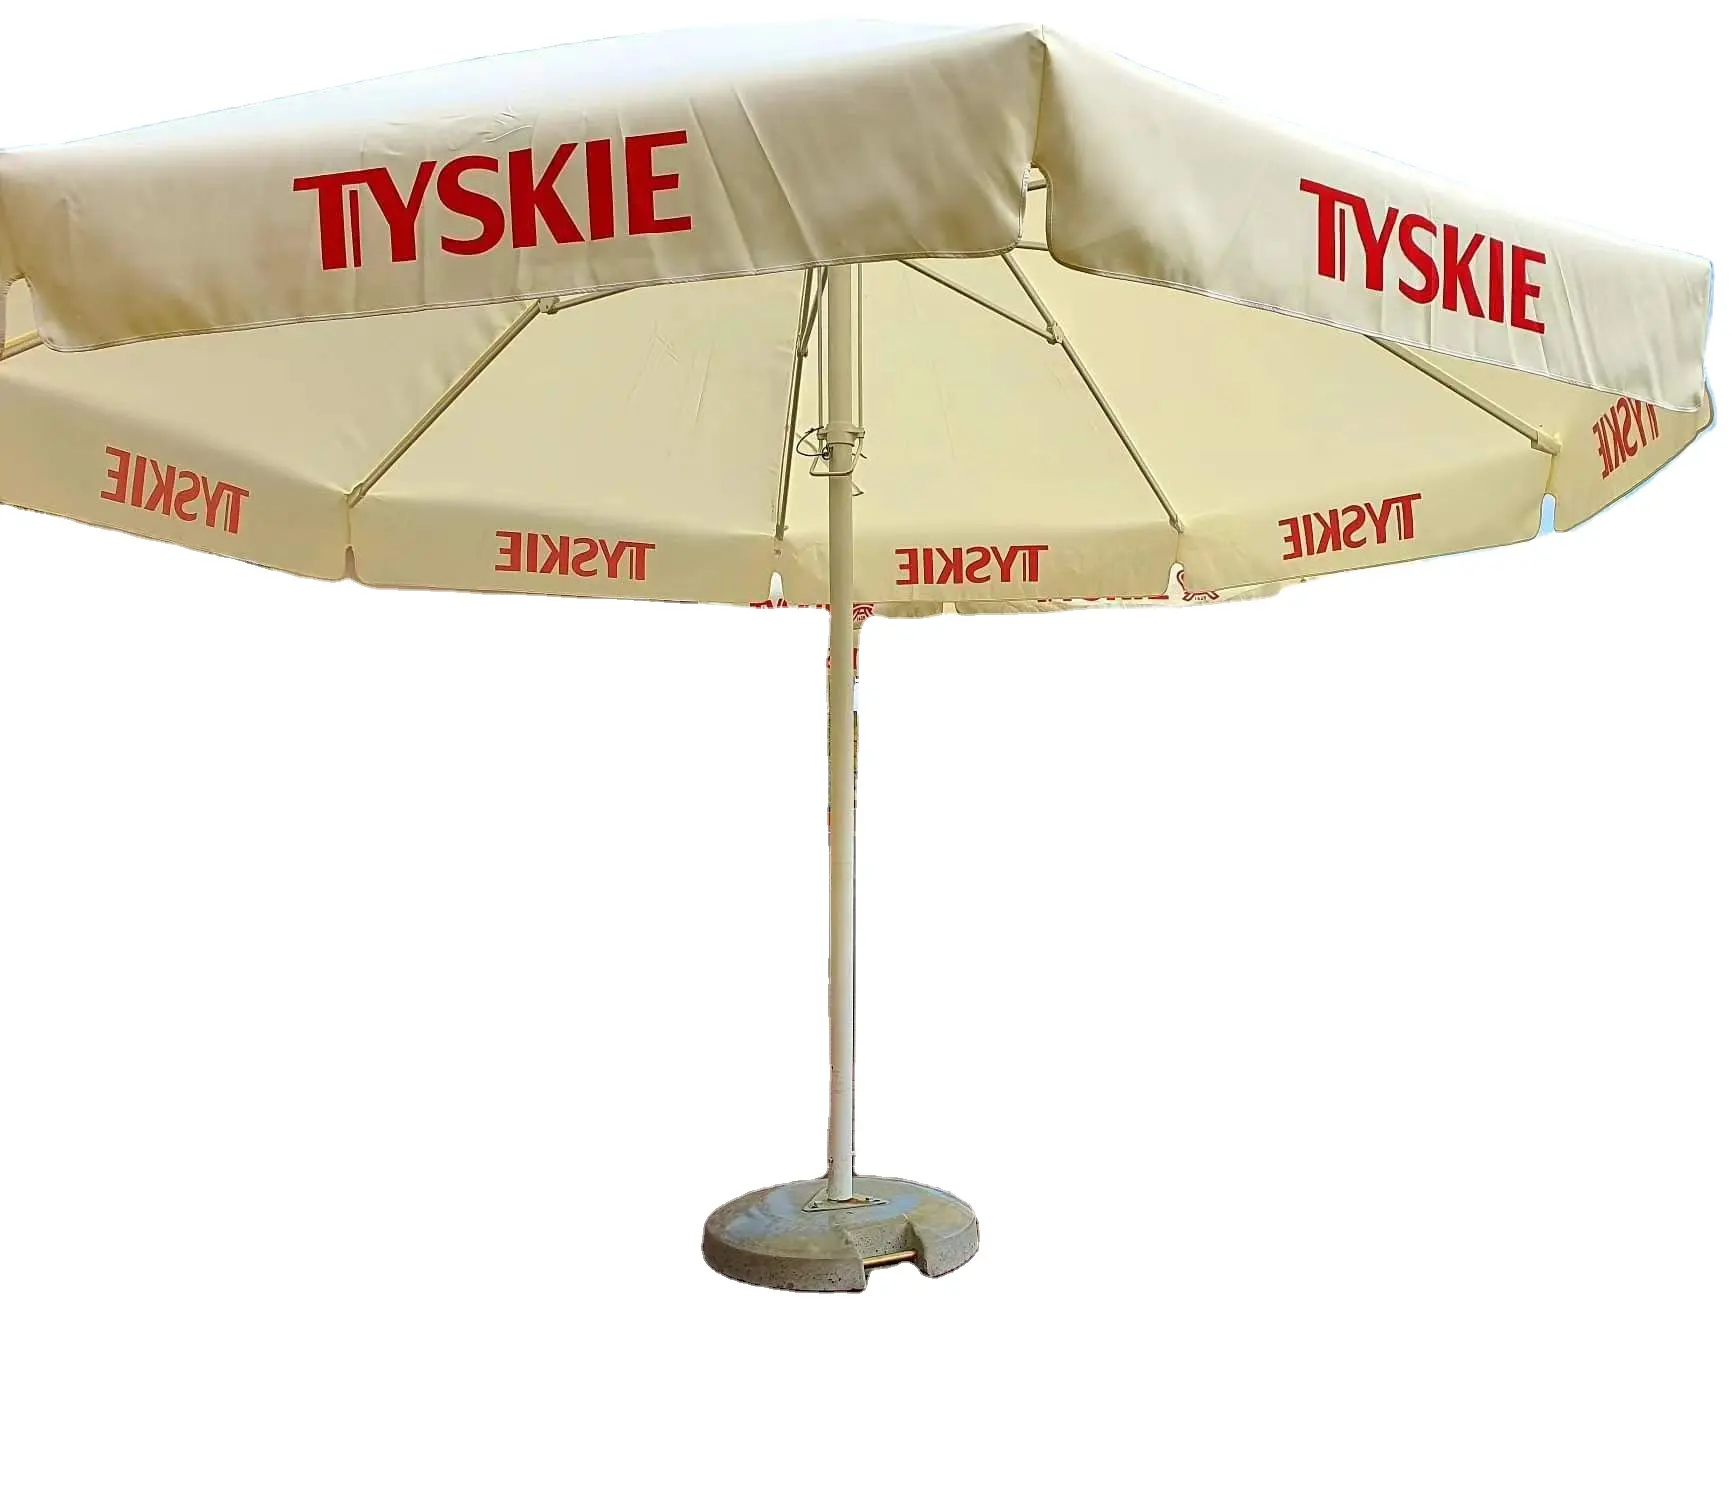 4 meters round outdoor TYSKIE beer brand patio umbrella